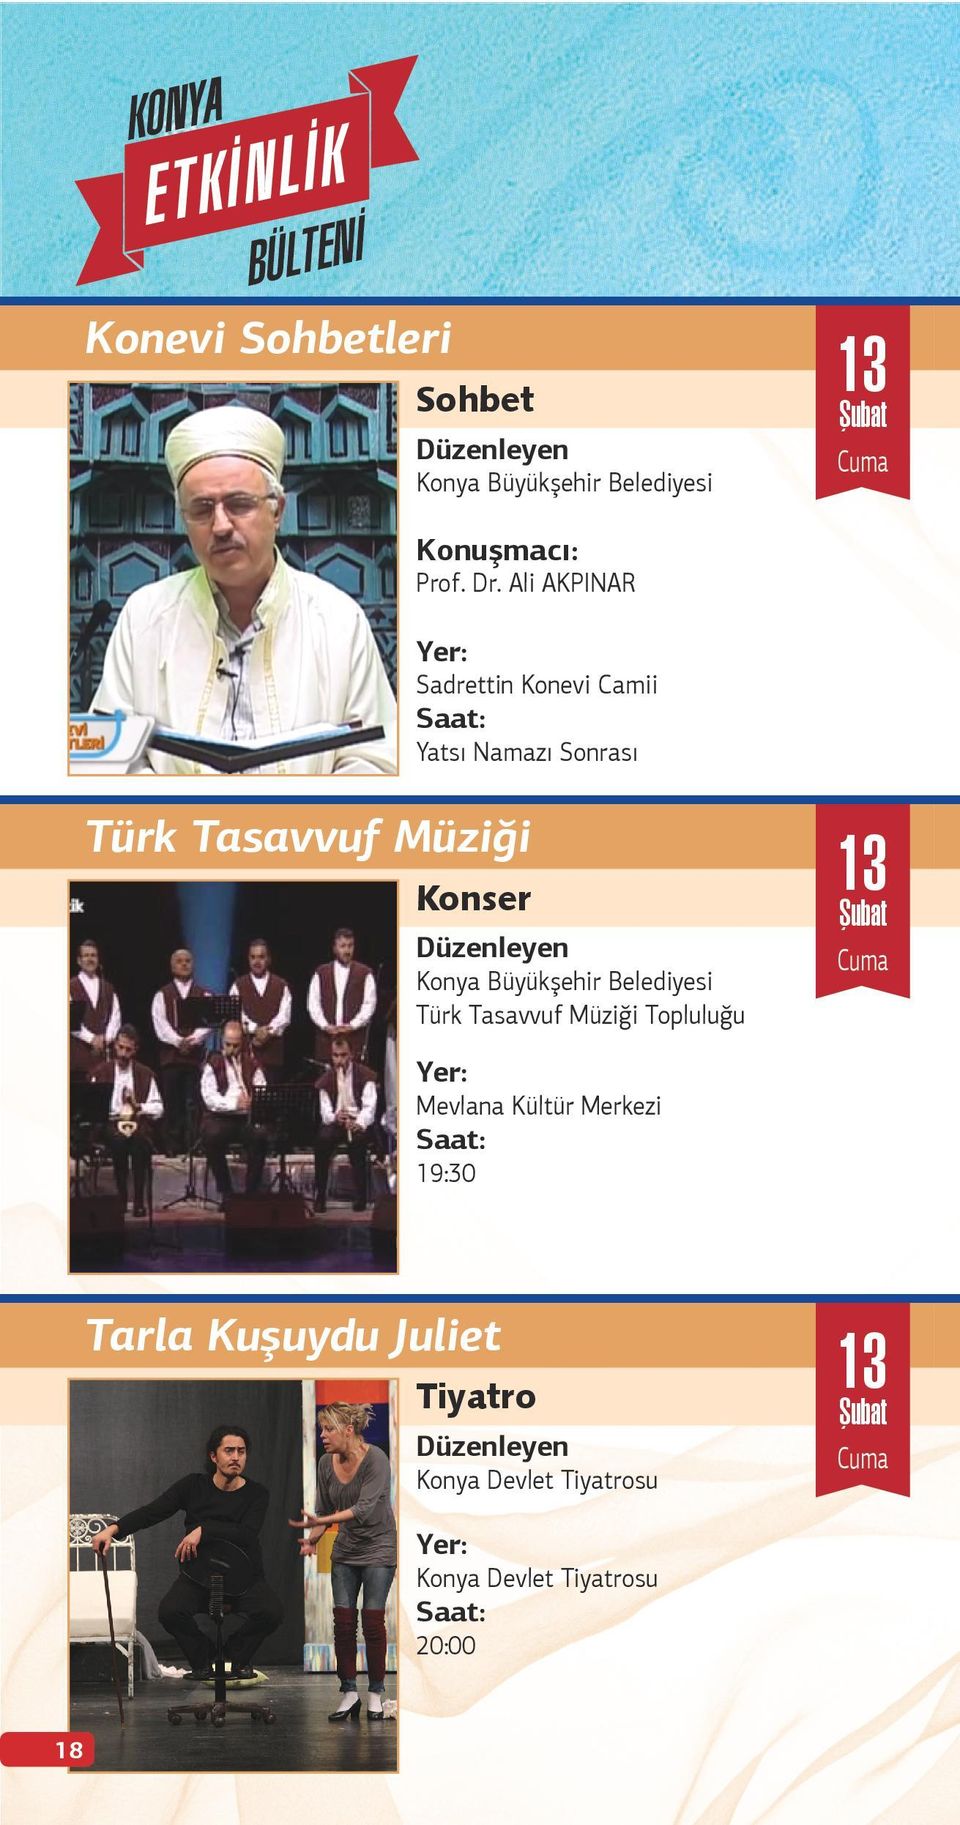 Müziği Konser Türk Tasavvuf Müziği Topluluğu 13 Mevlana Kültür